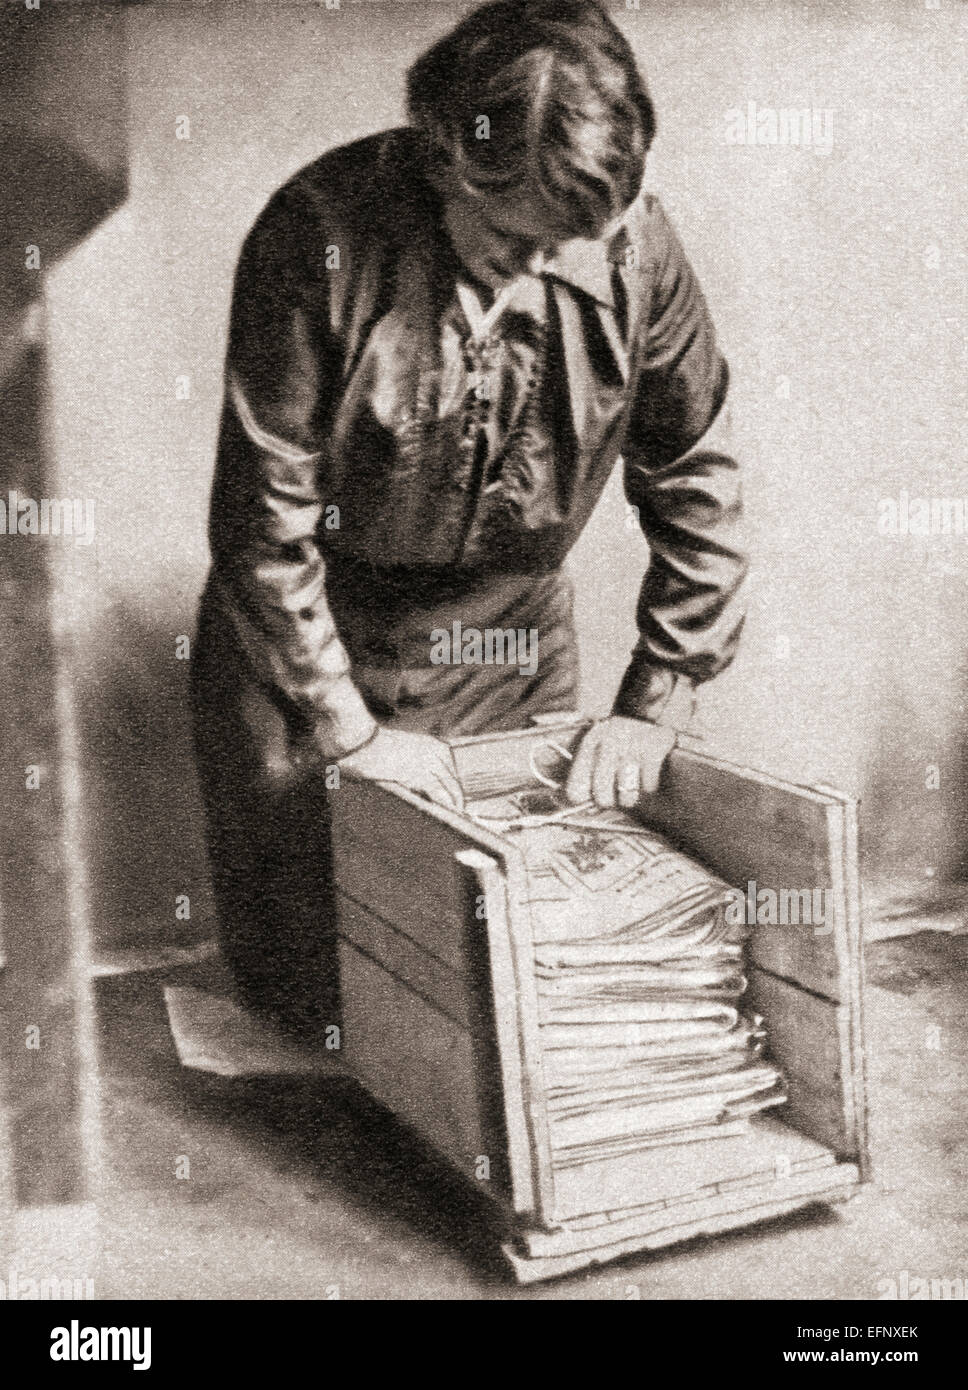 Mit Papier am 9d. pro Pfund gespeichert Hausfrauen alte Zeitungen für den Weiterverkauf, Fischhändler etc. im ersten Weltkrieg. Stockfoto